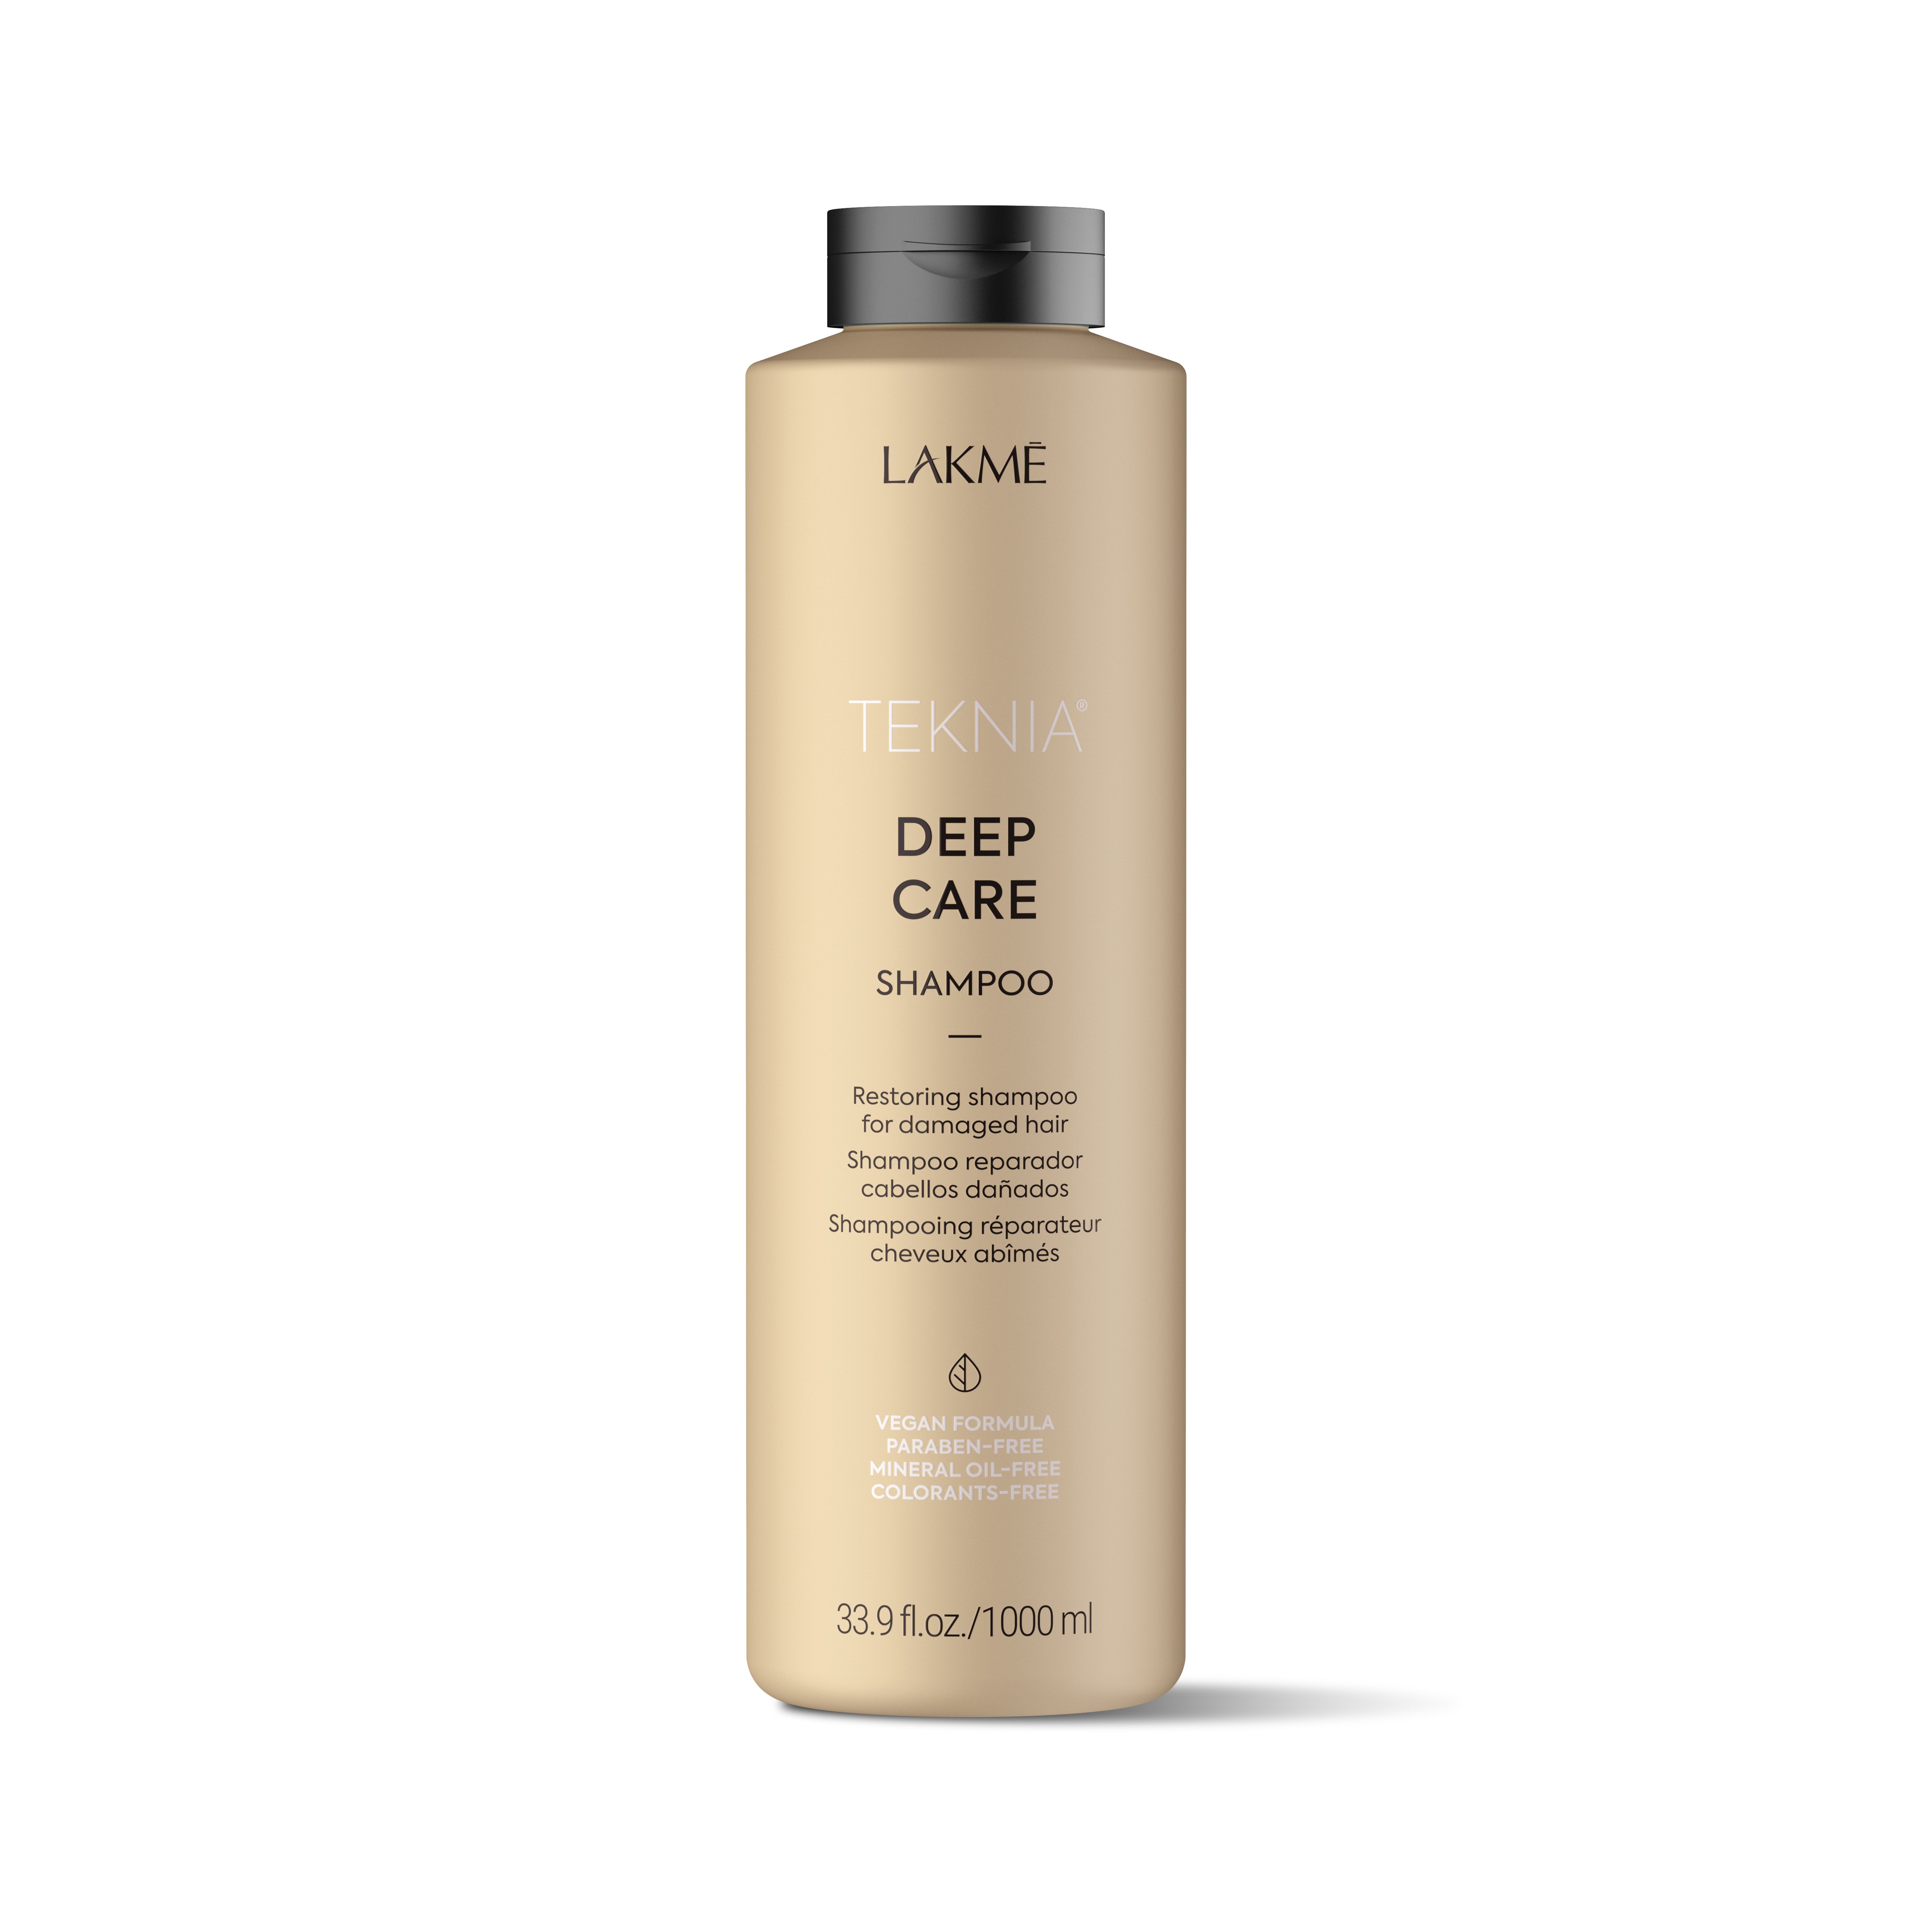 Lakmé - Teknia Deep Care Shampoo 1000 ml - Skjønnhet